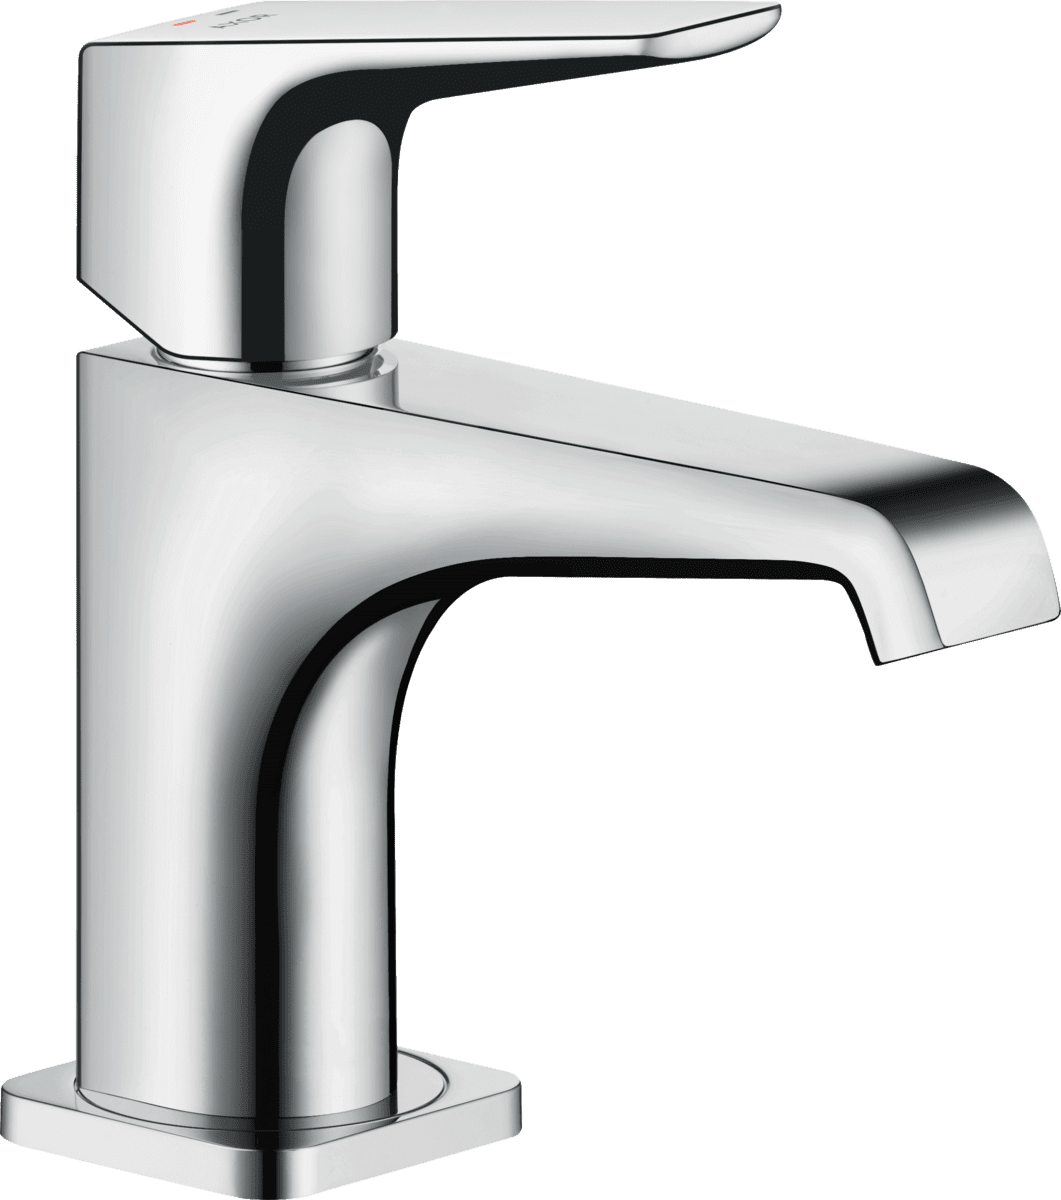 εικόνα του HANSGROHE AXOR Citterio E Single lever basin mixer 90 with lever handle for hand wash basins with waste set #36112000 - Chrome